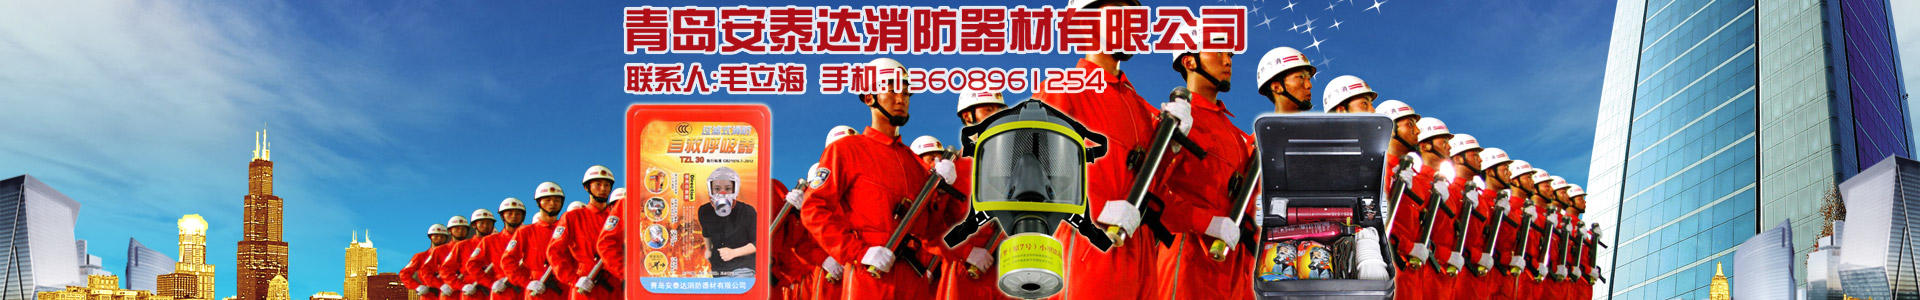 关于我们-青岛安泰达消防器材有限公司-